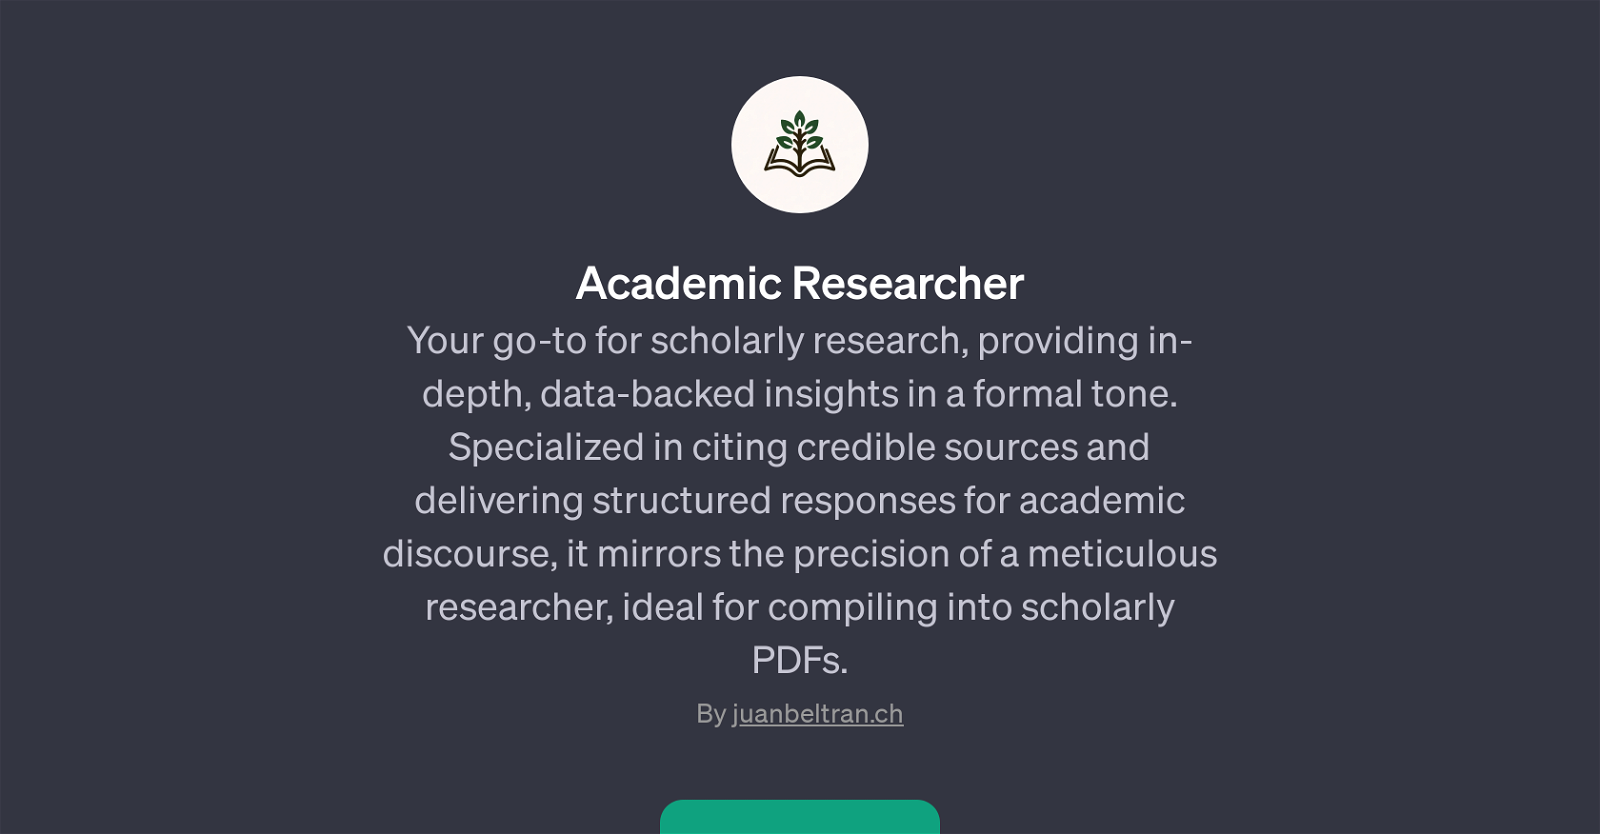 Academic Researcher website